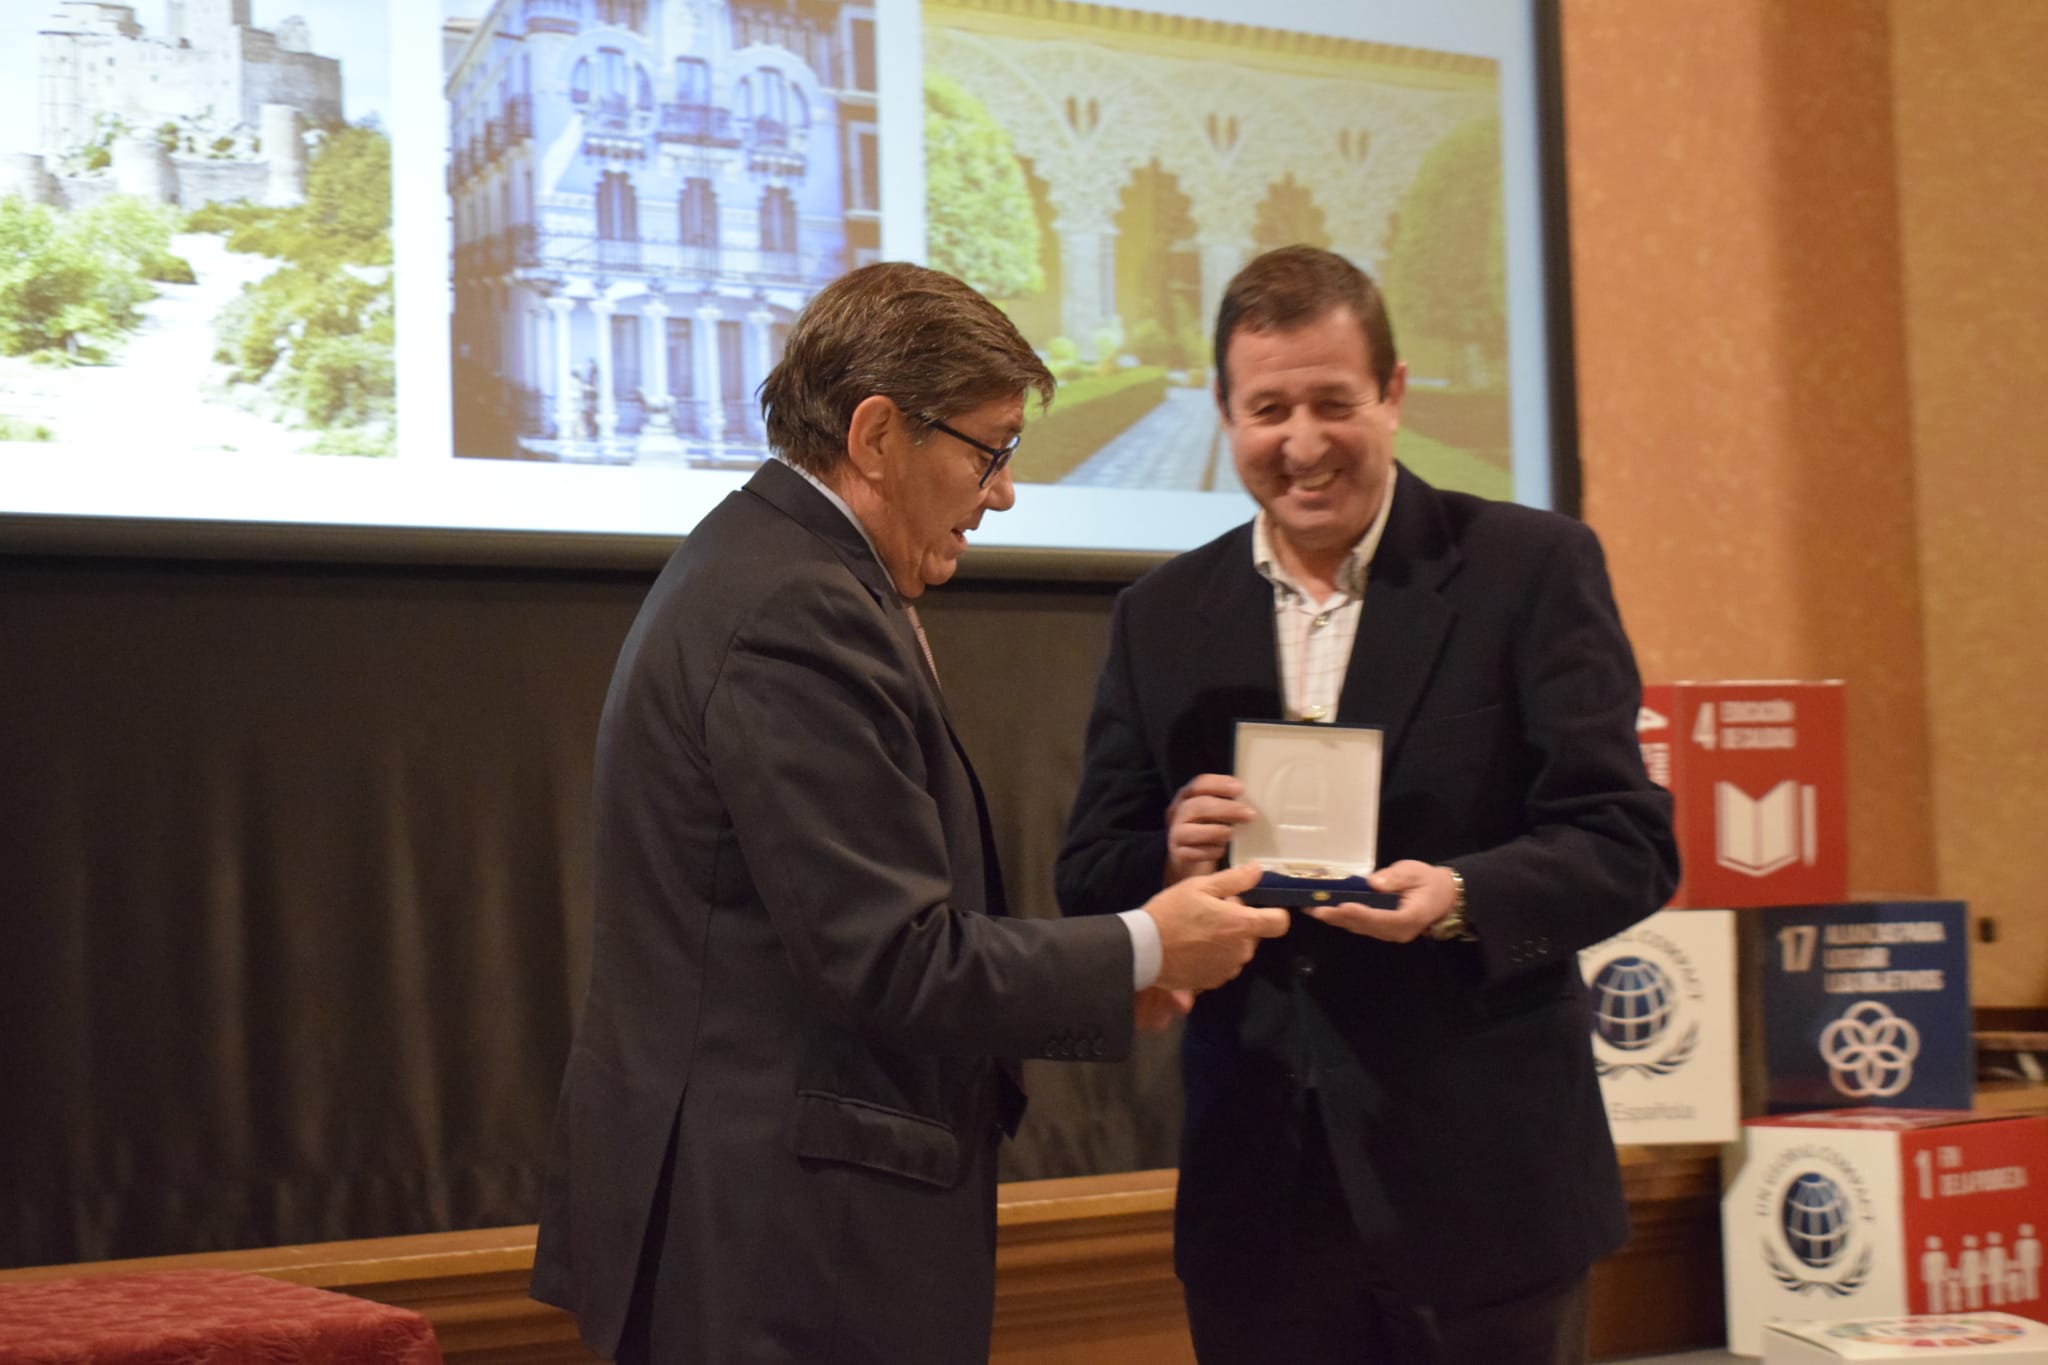 Luis Masgrau presidente de la FAM recoge la Medalla al Mérito Turístico